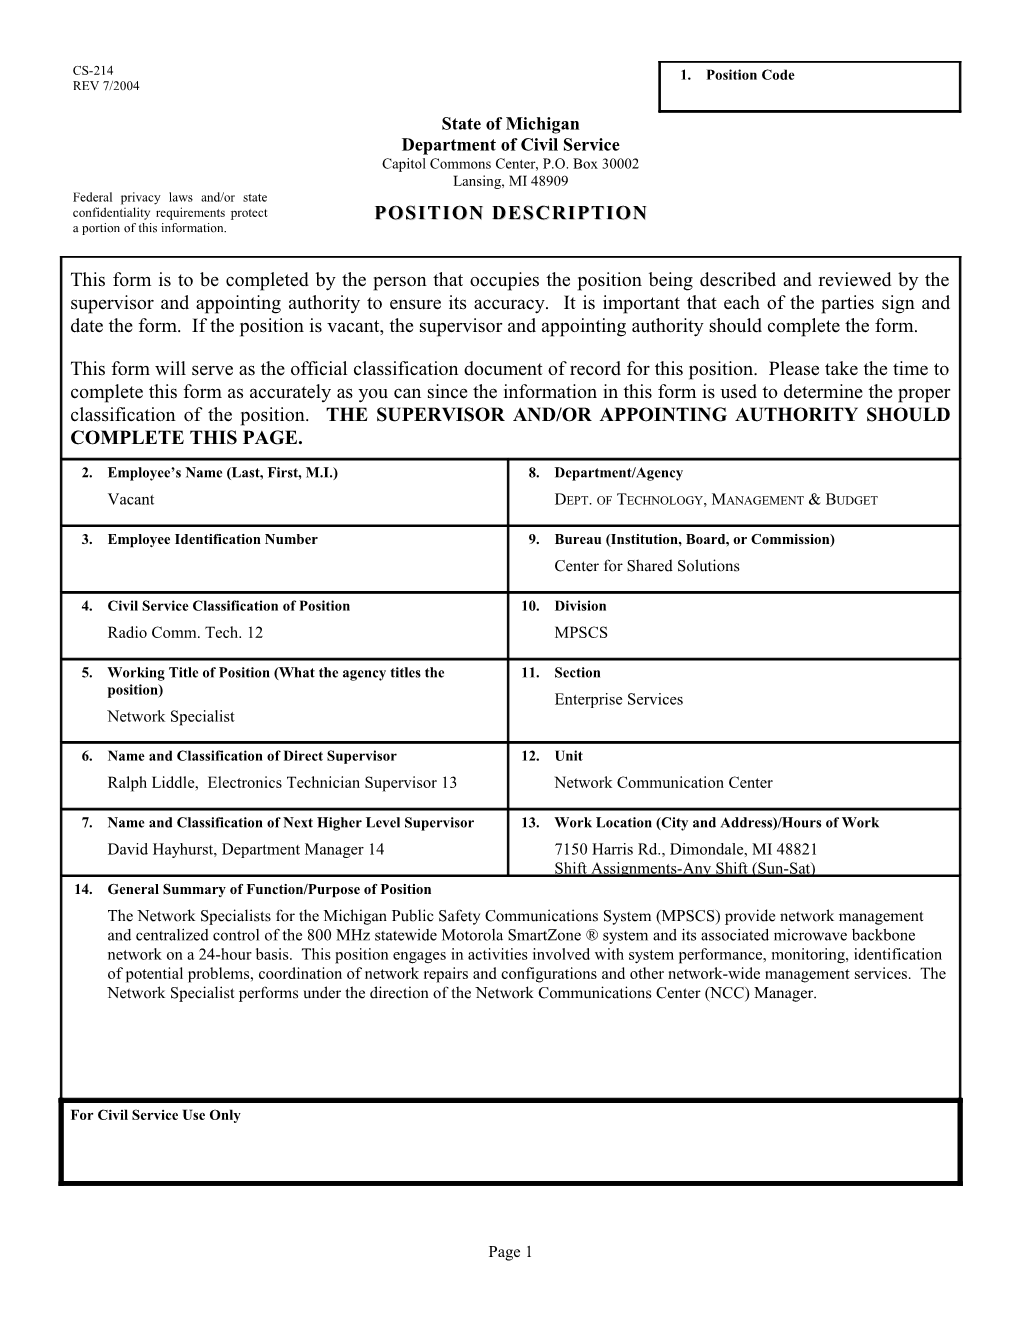 CS-214 Position Description Form s14